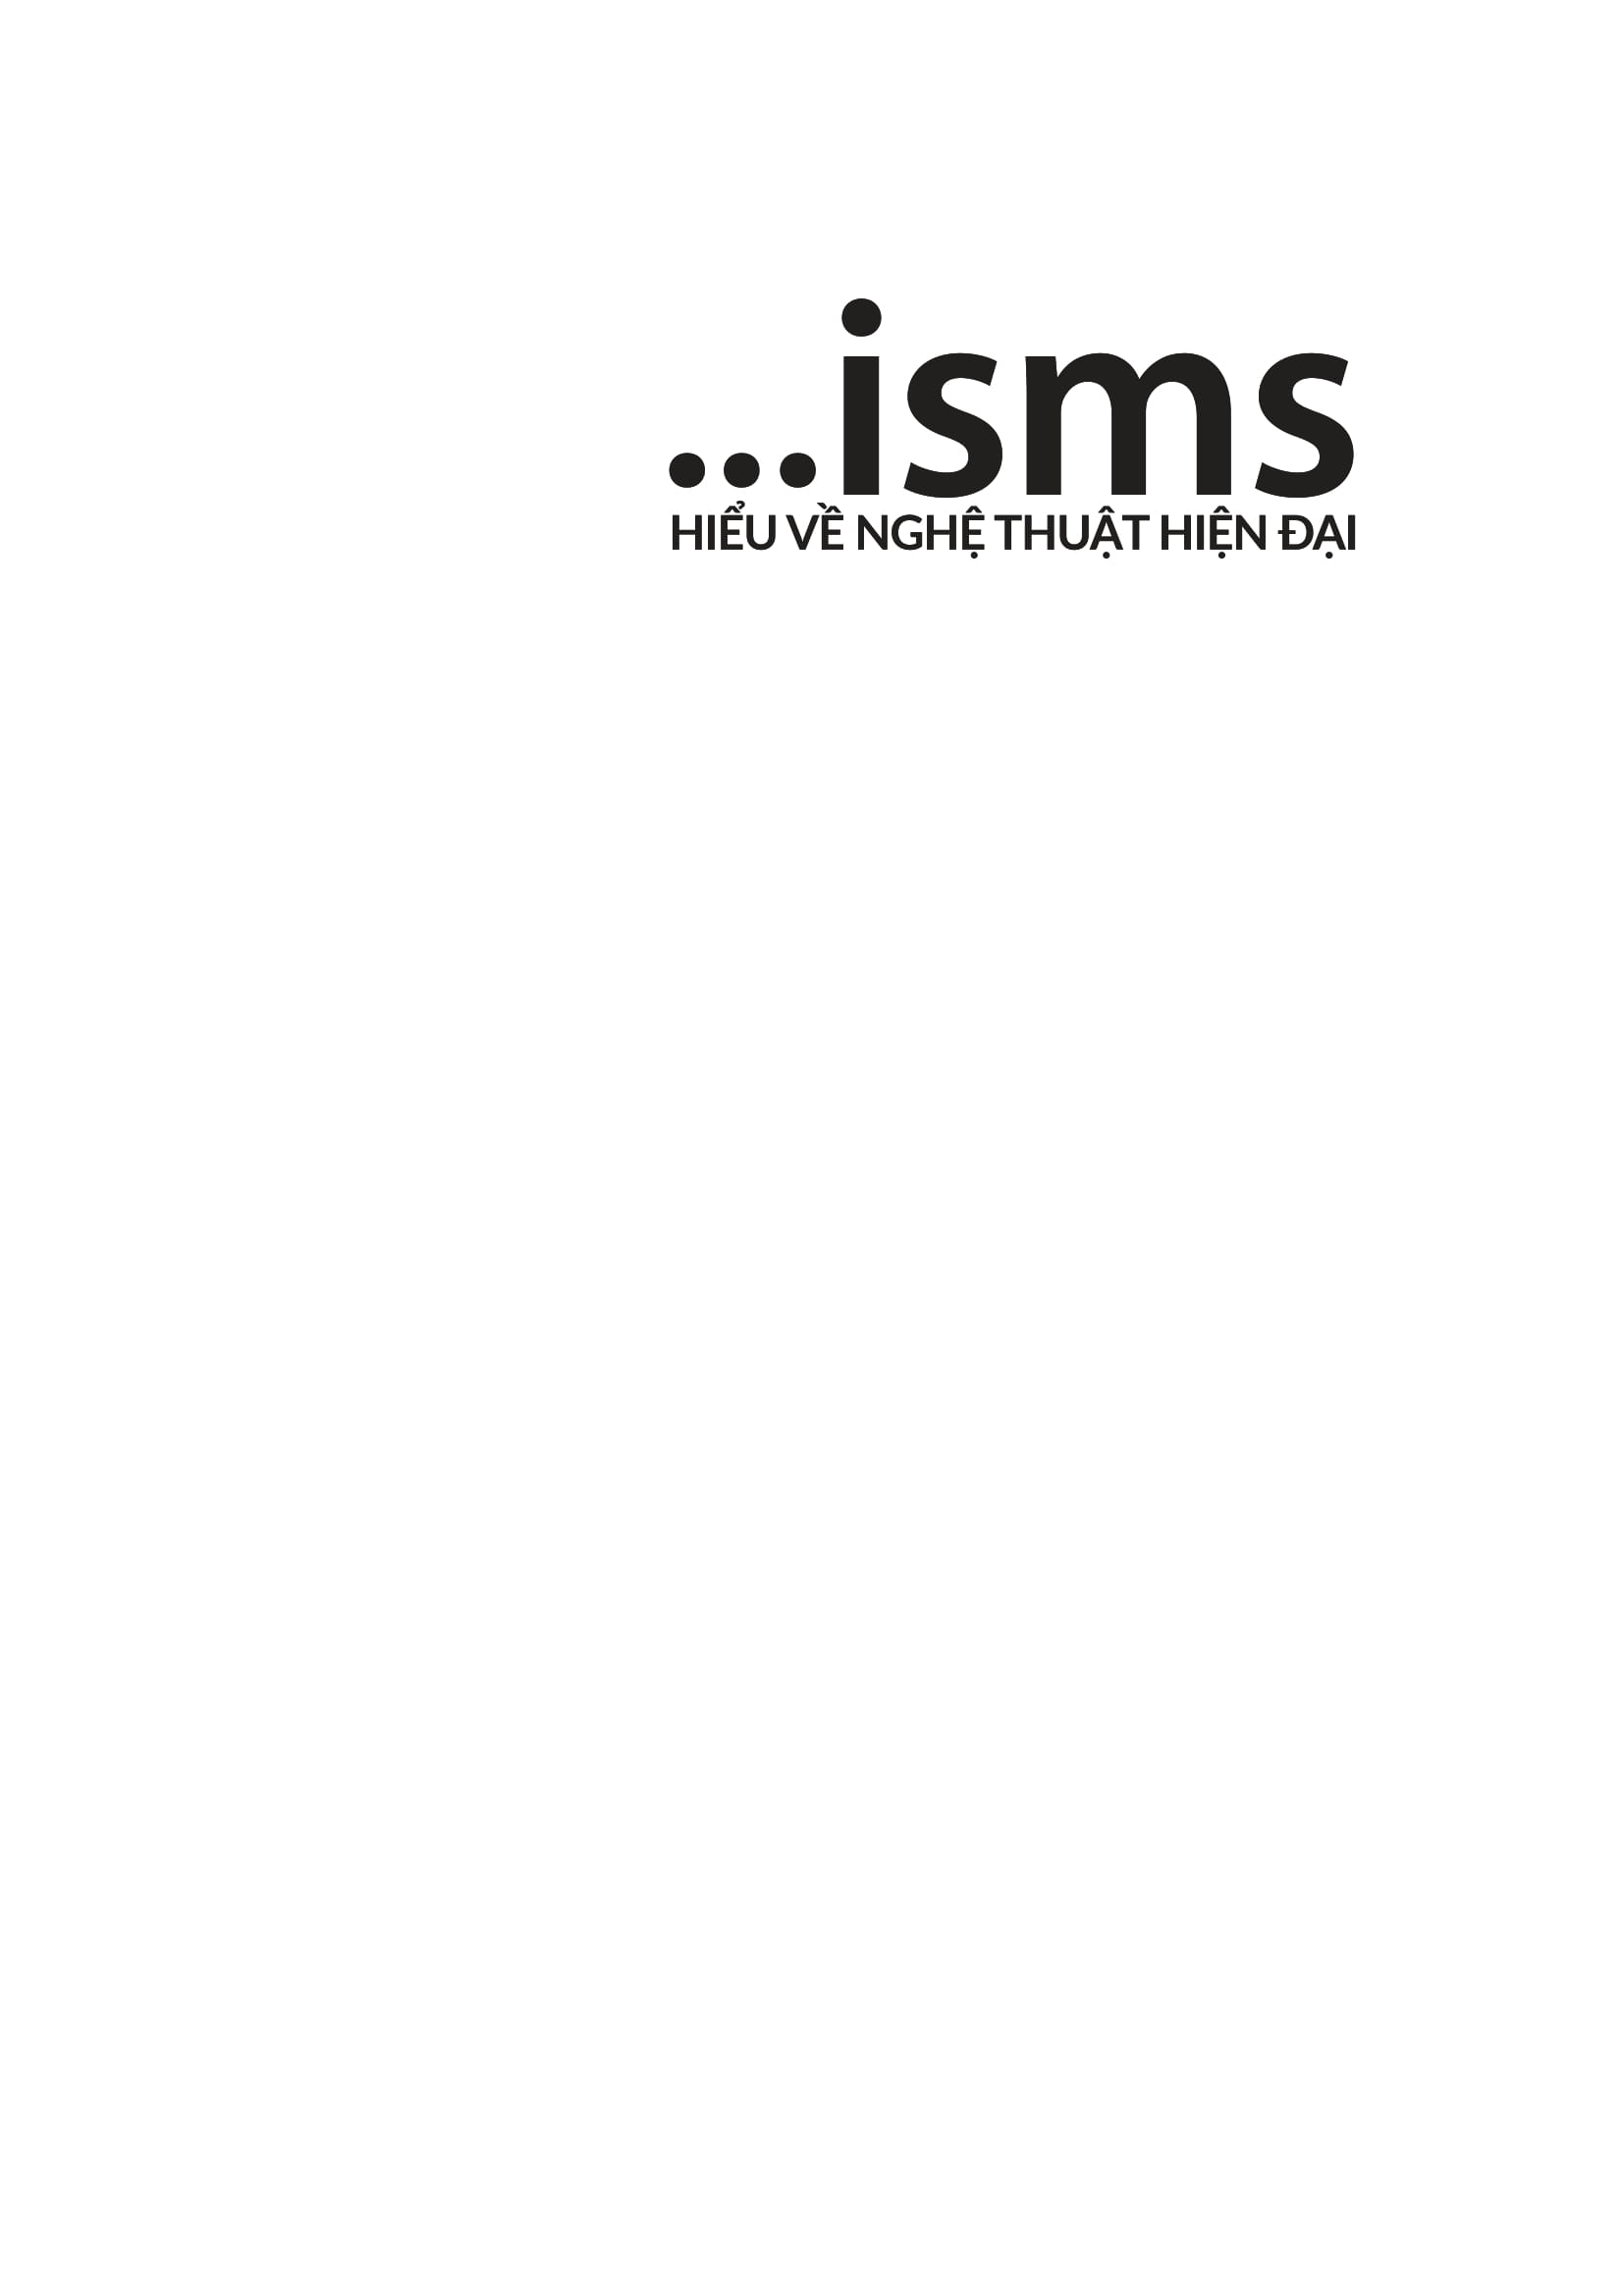 ISMS - Hiểu Về Nghệ Thuật Hiện Đại Bìa Cứng PDF